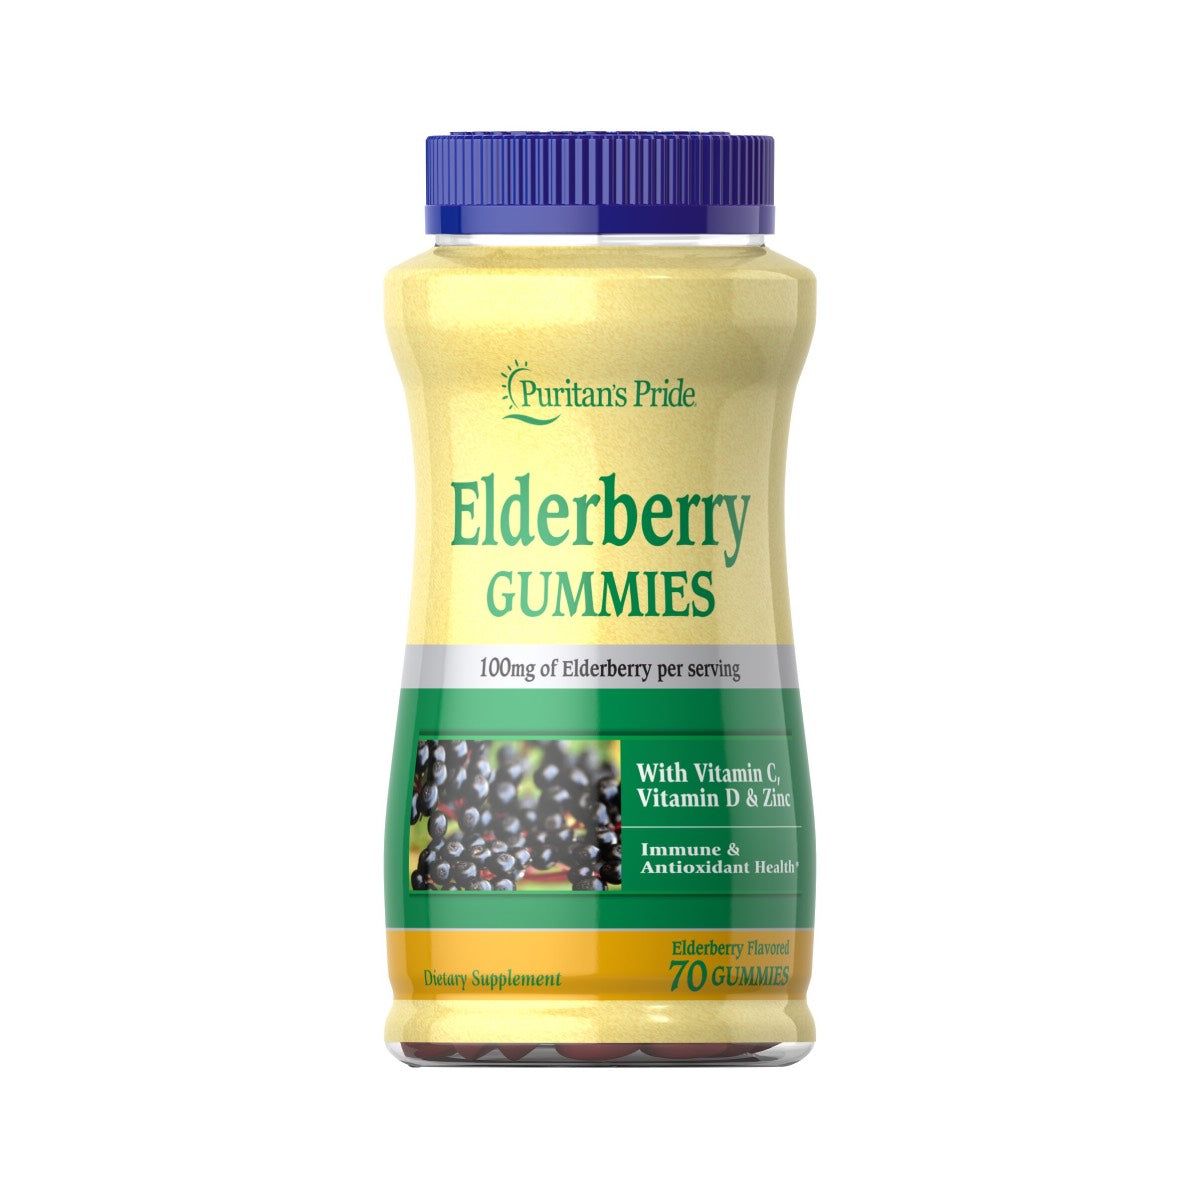 Puritan's Pride, Elderberry Gummies with Vitamin C, D & Zinc